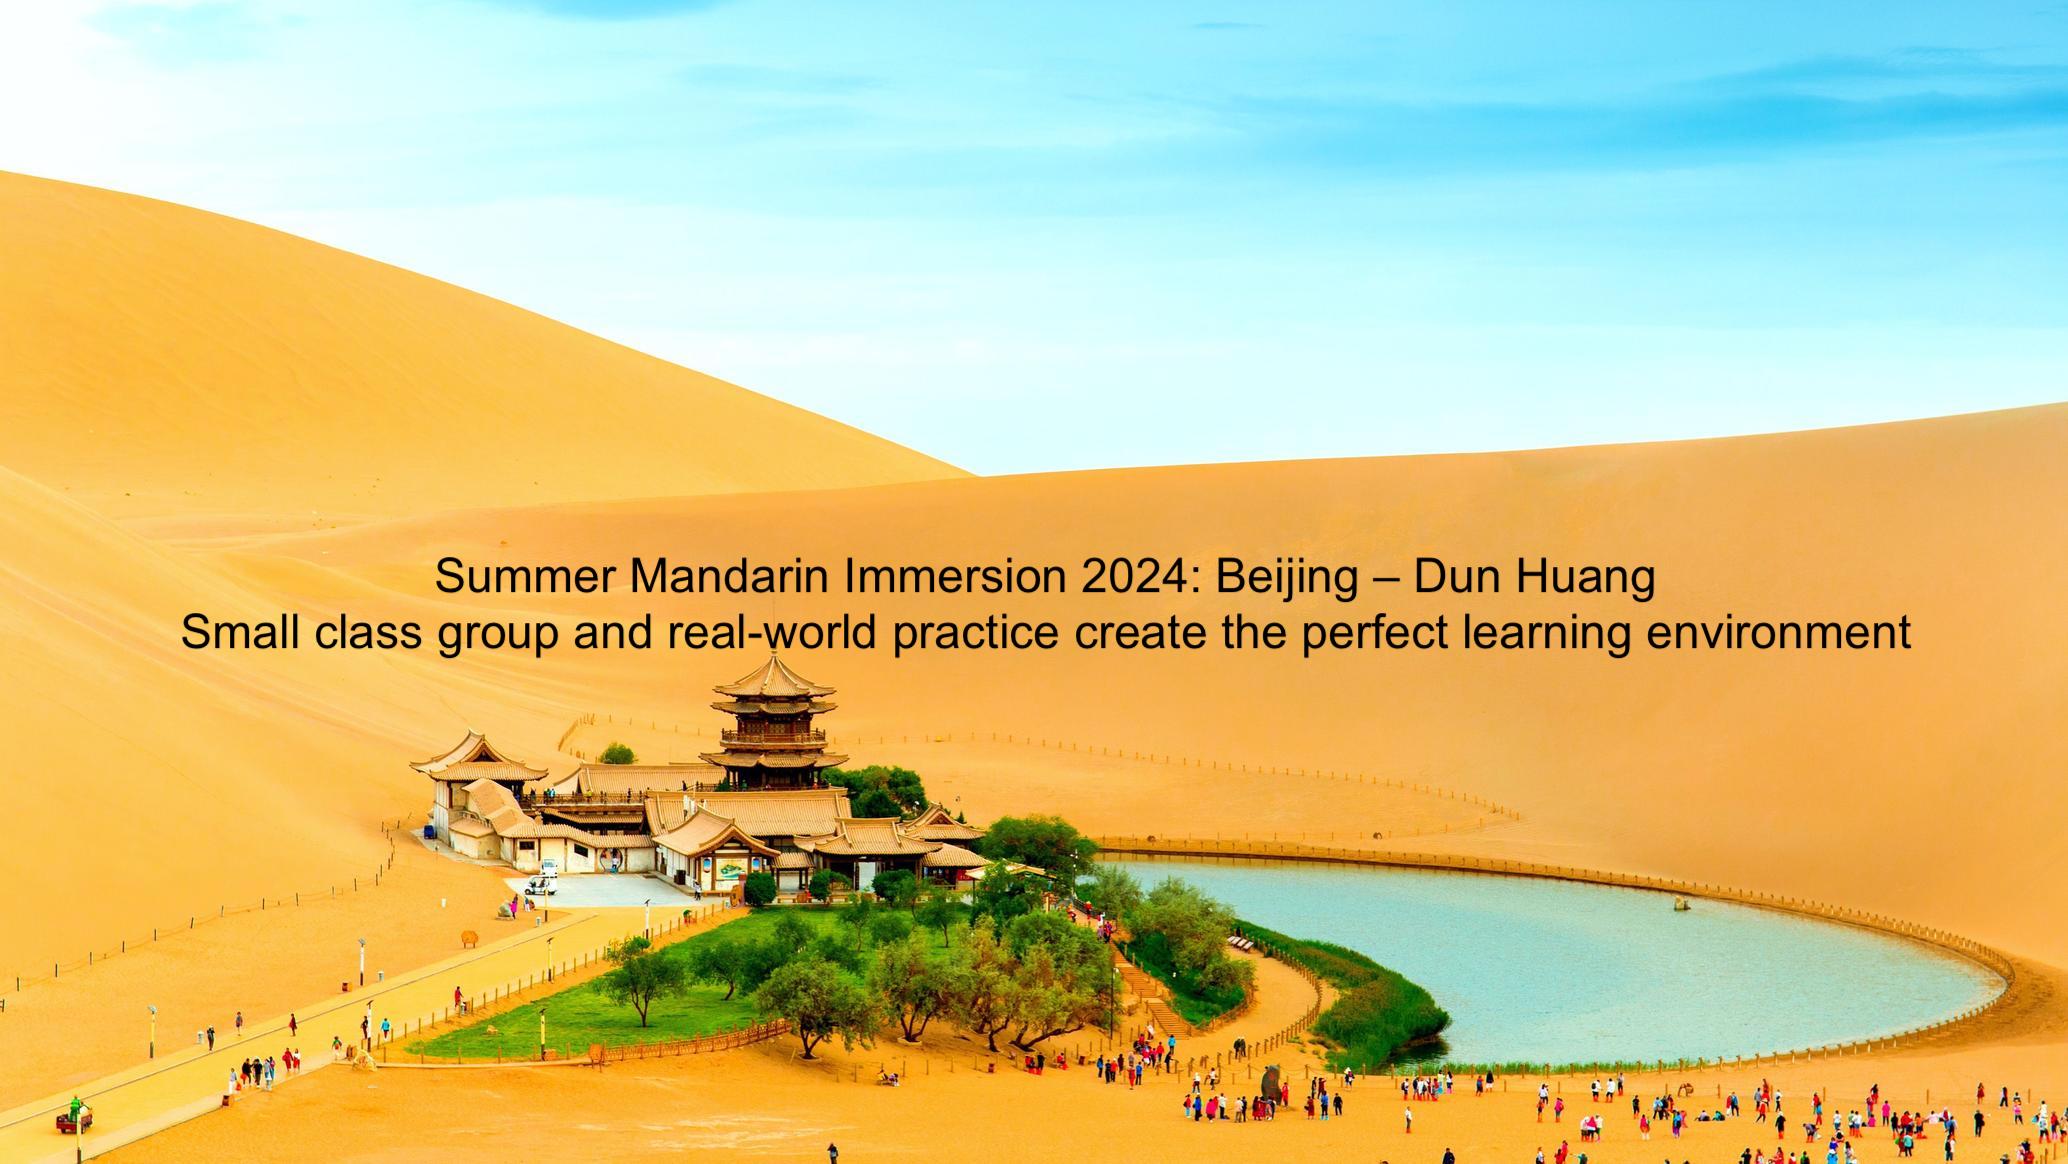 Summer Mandarin Immersion 2024: Beijing – Dun Huang